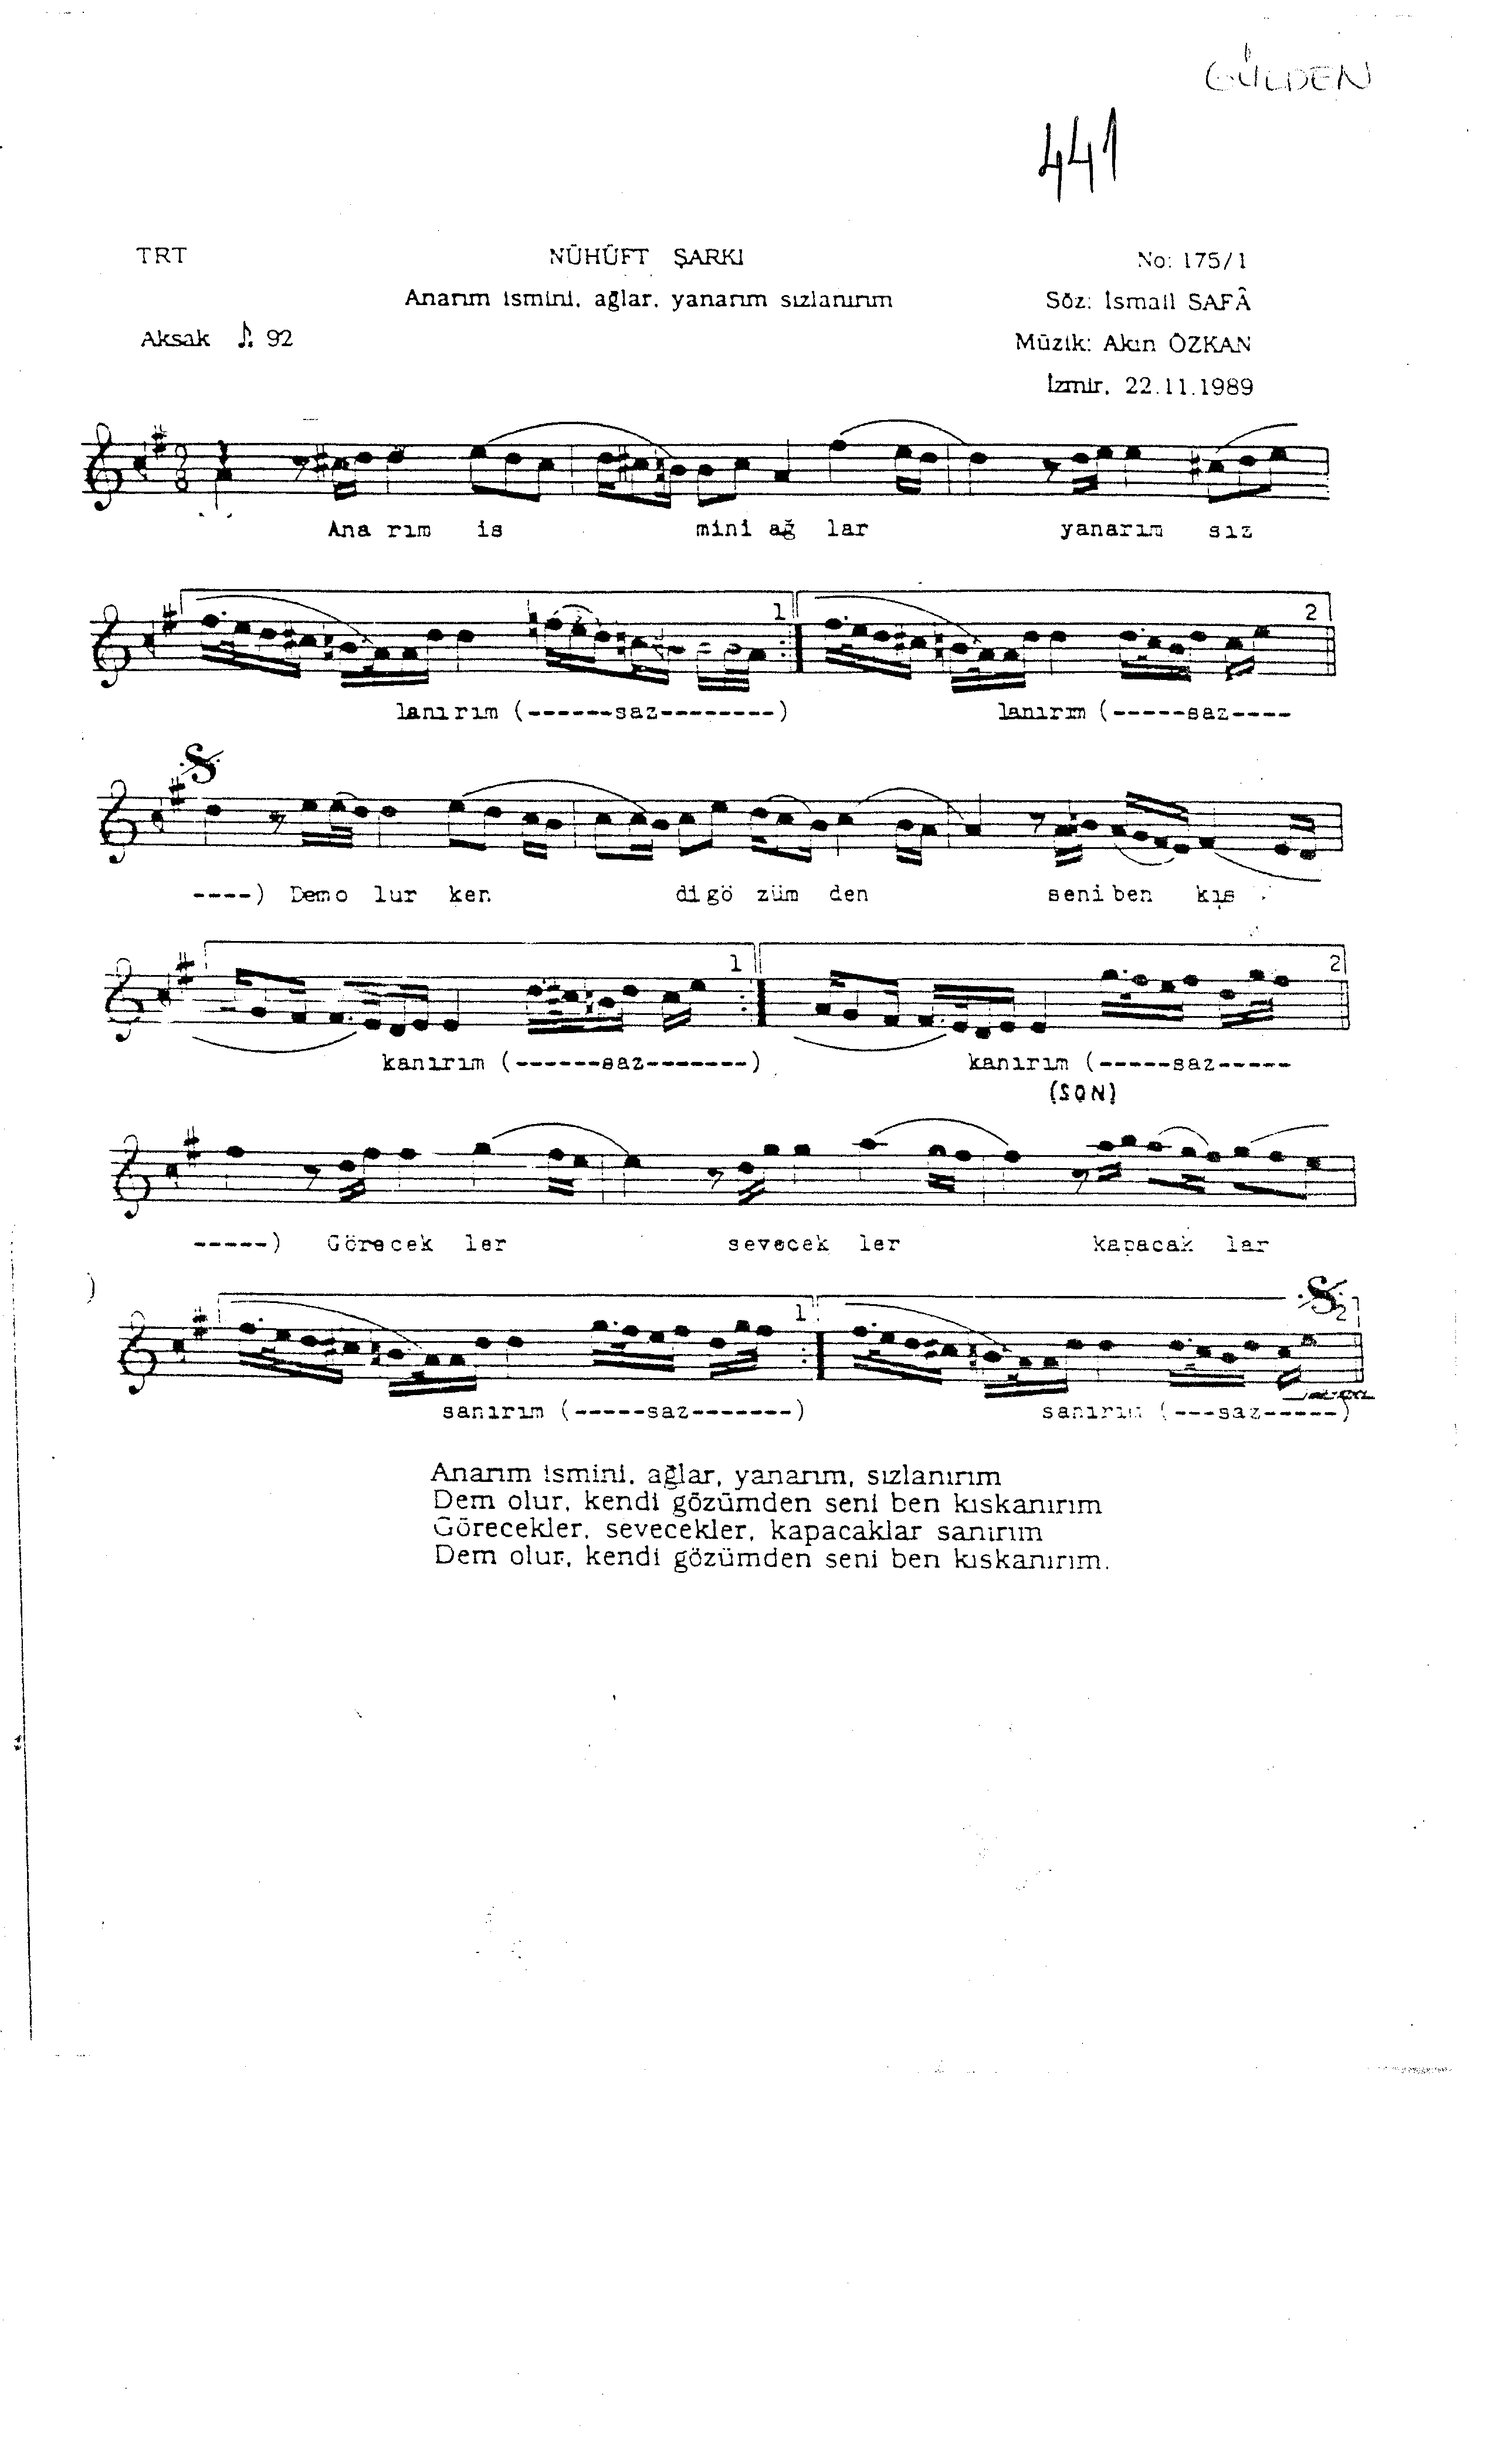 Hicâz - Şarkı - Akın Özkan - Sayfa 1